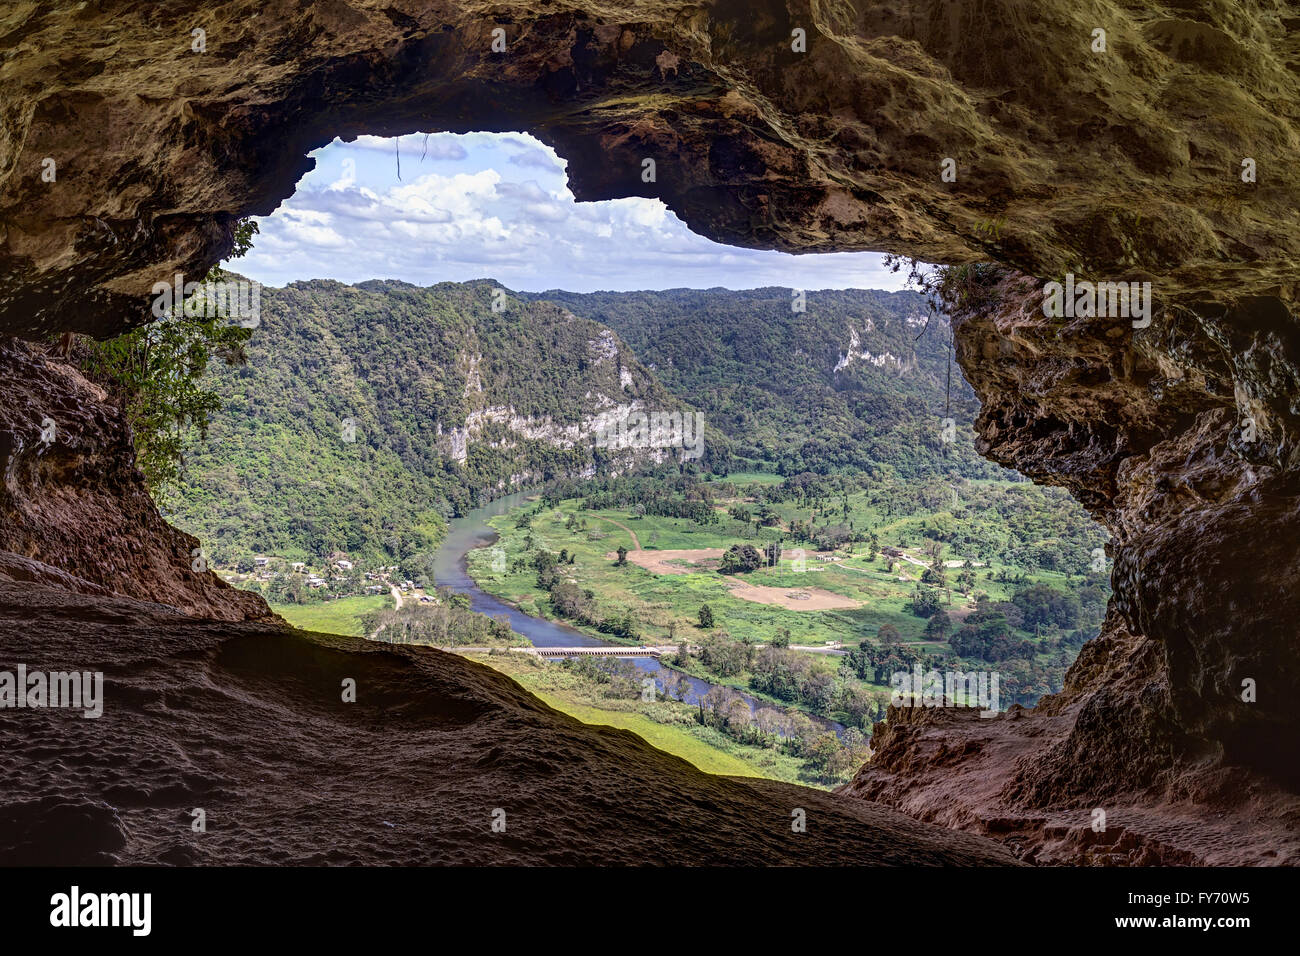 Cueva Ventana - Grotte de fenêtre à Porto Rico Banque D'Images